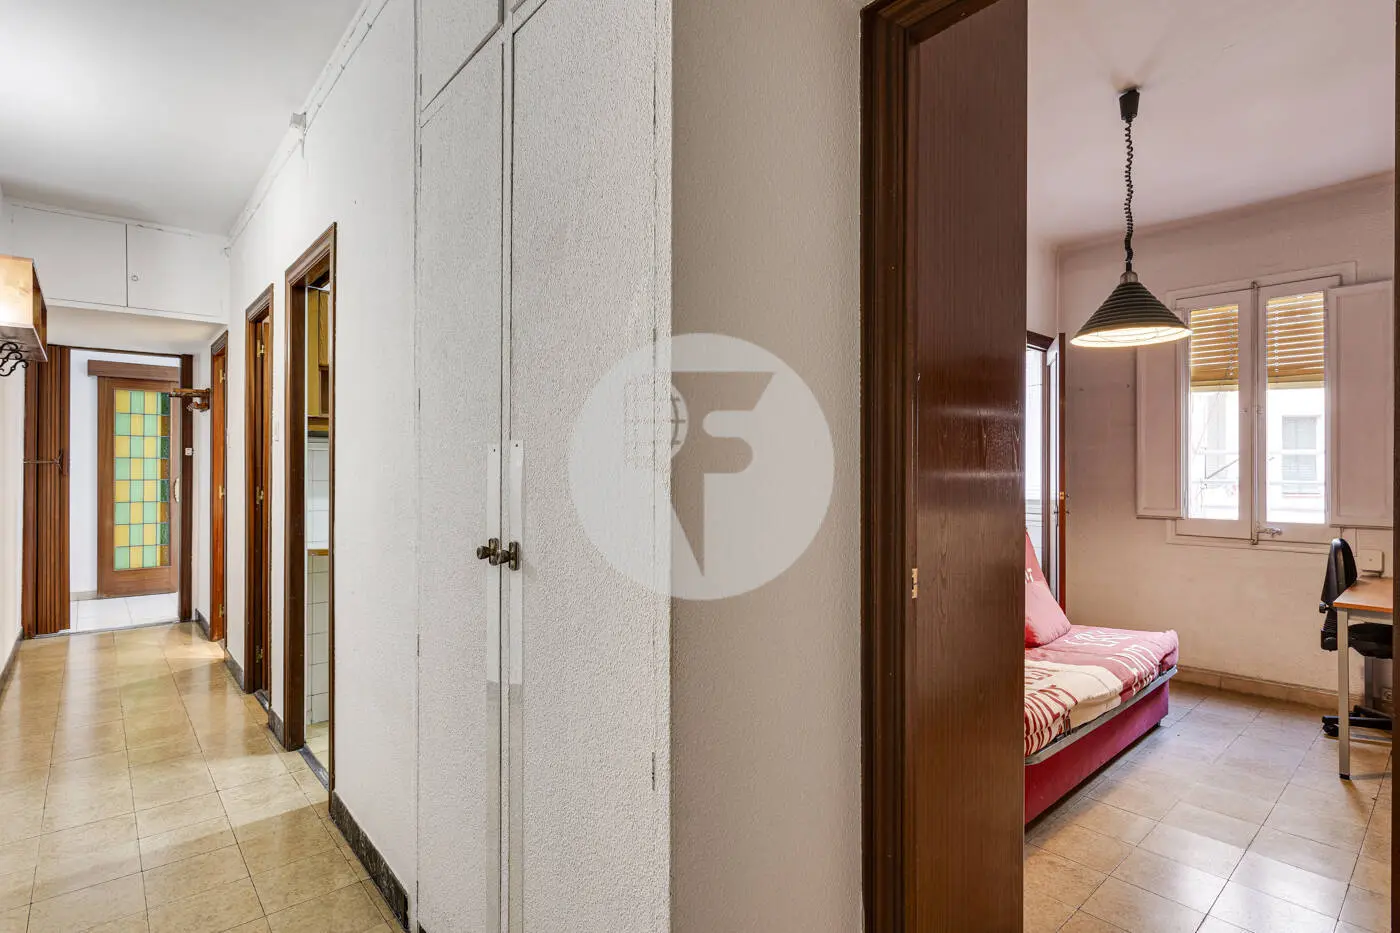 Pis de 3 habitacions ubicat al barri de la Nova Esquerra de l'Eixample de Barcelona. 22